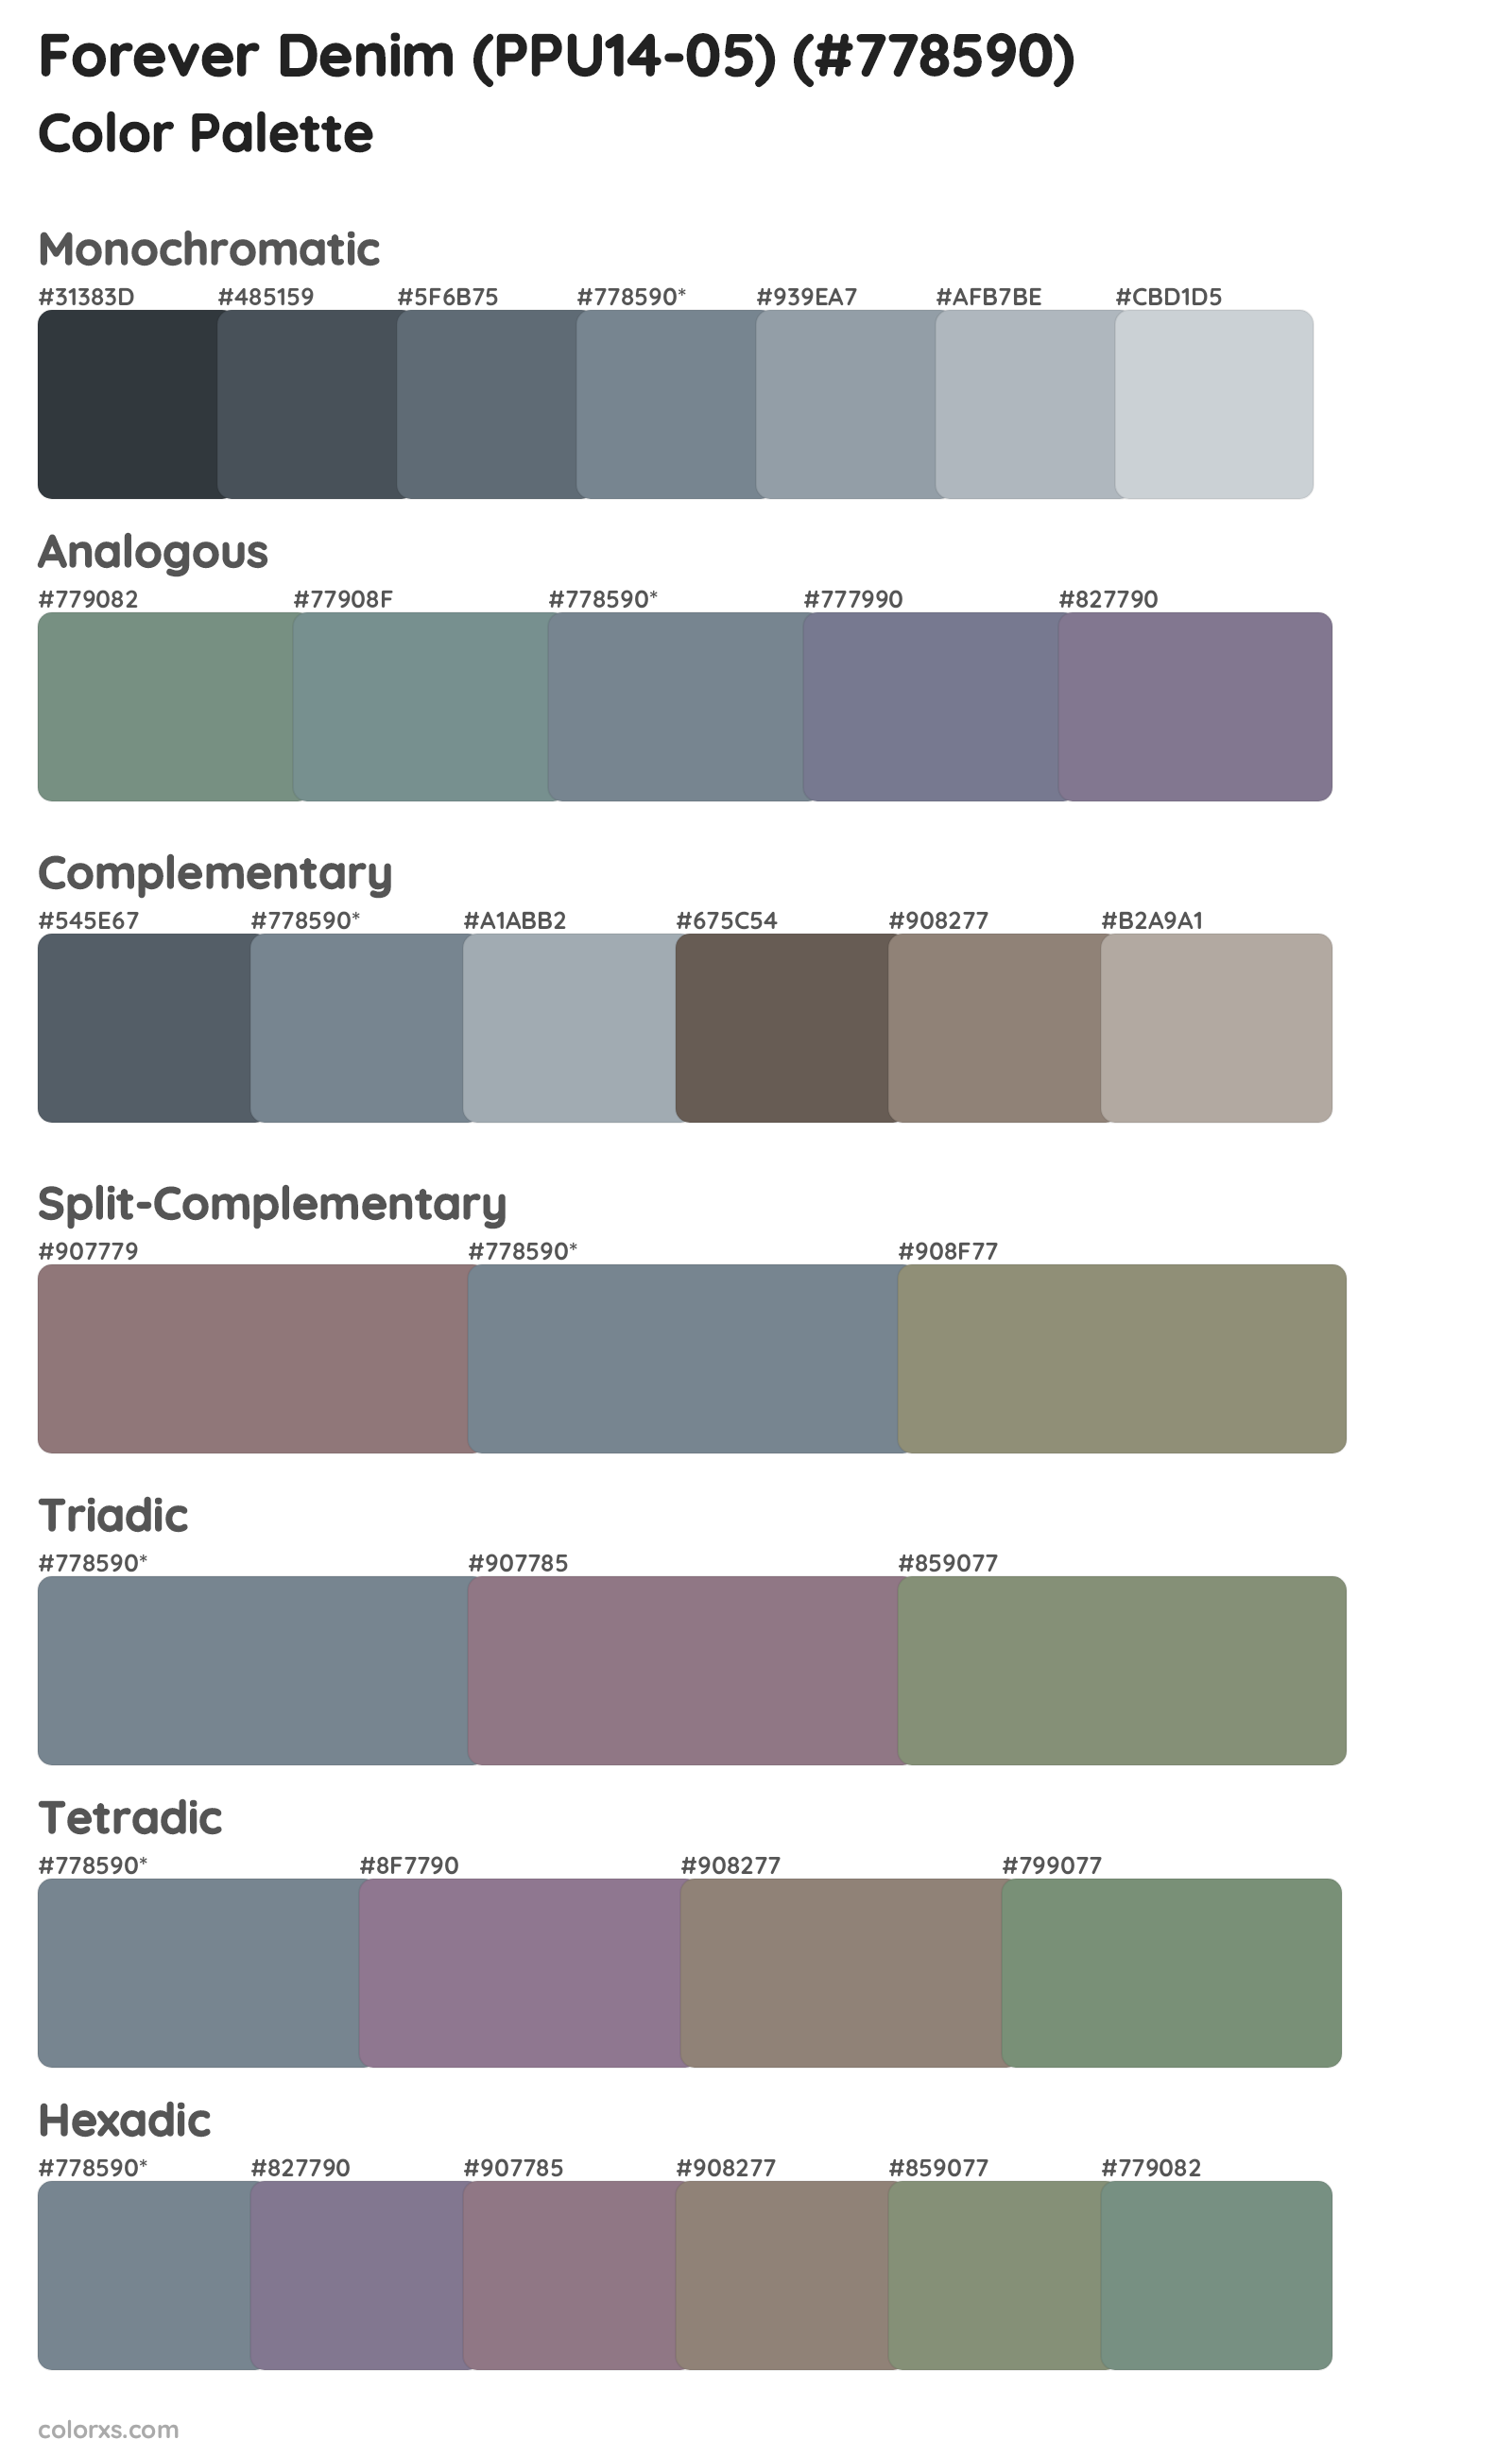 Forever Denim (PPU14-05) Color Scheme Palettes